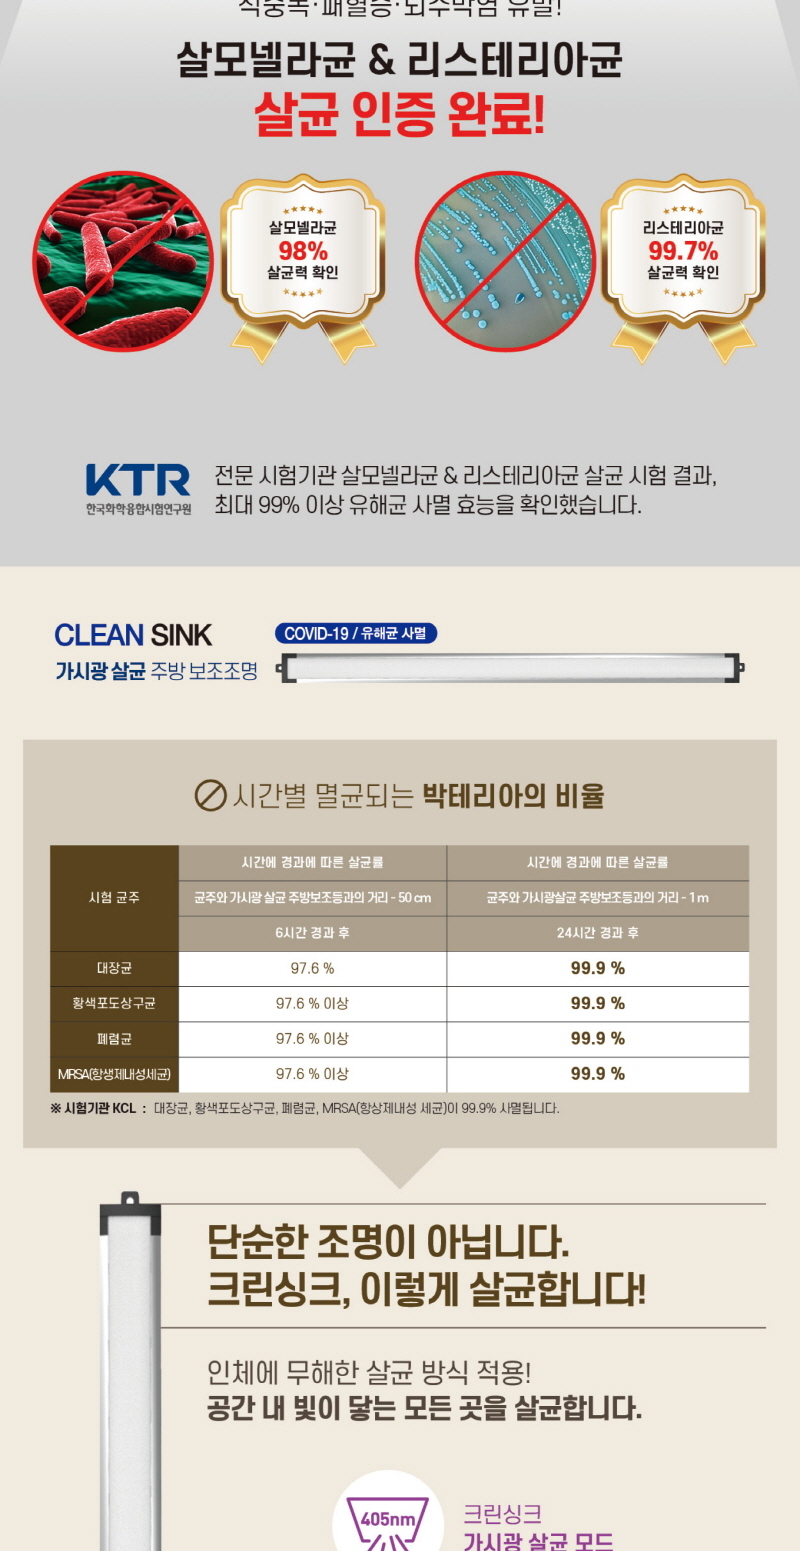 CLEAN-SINK-8.jpg